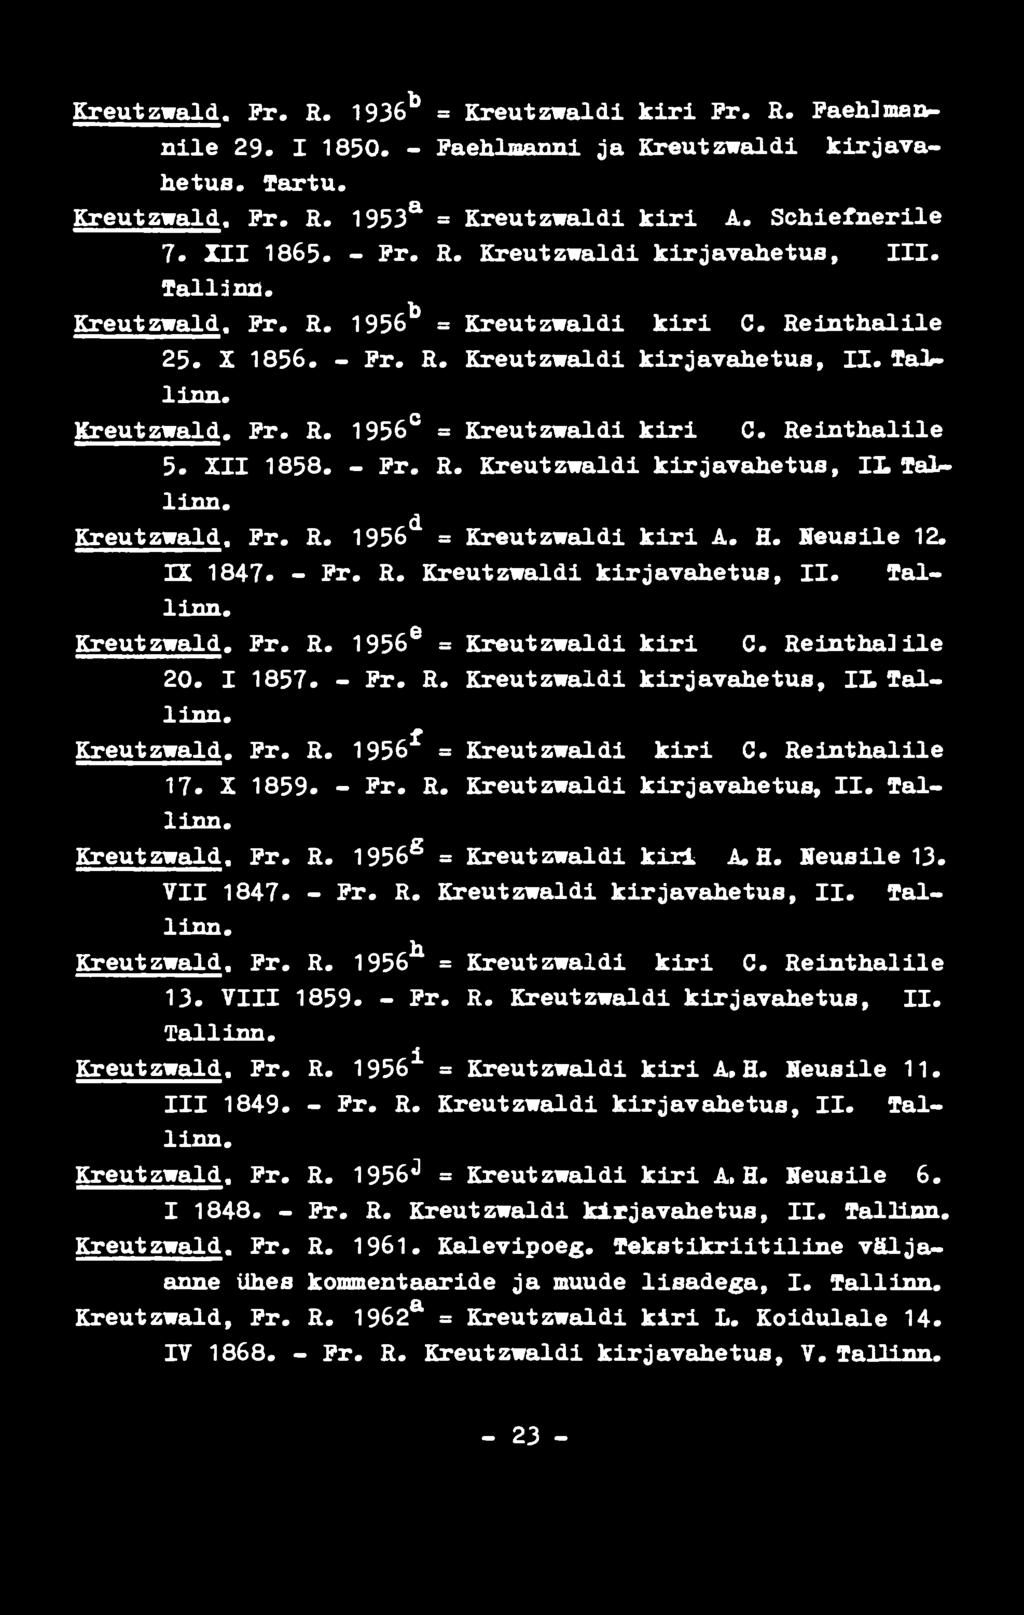 Reinthalile 5. XII 1858. - Pr. R. Kreutzwaldi kirjavahetus, IL Tallinn. Kreutzwald. Pr. R. 1956 d = Kreutzwaldi kiri A. H. Neusile 12. TL 1847. - Pr. R. Kreutzwaldi kirjavahetus, II. Tallinn. Kreutzwald. Pr. R. 1956 e = Kreutzwaldi kiri C.